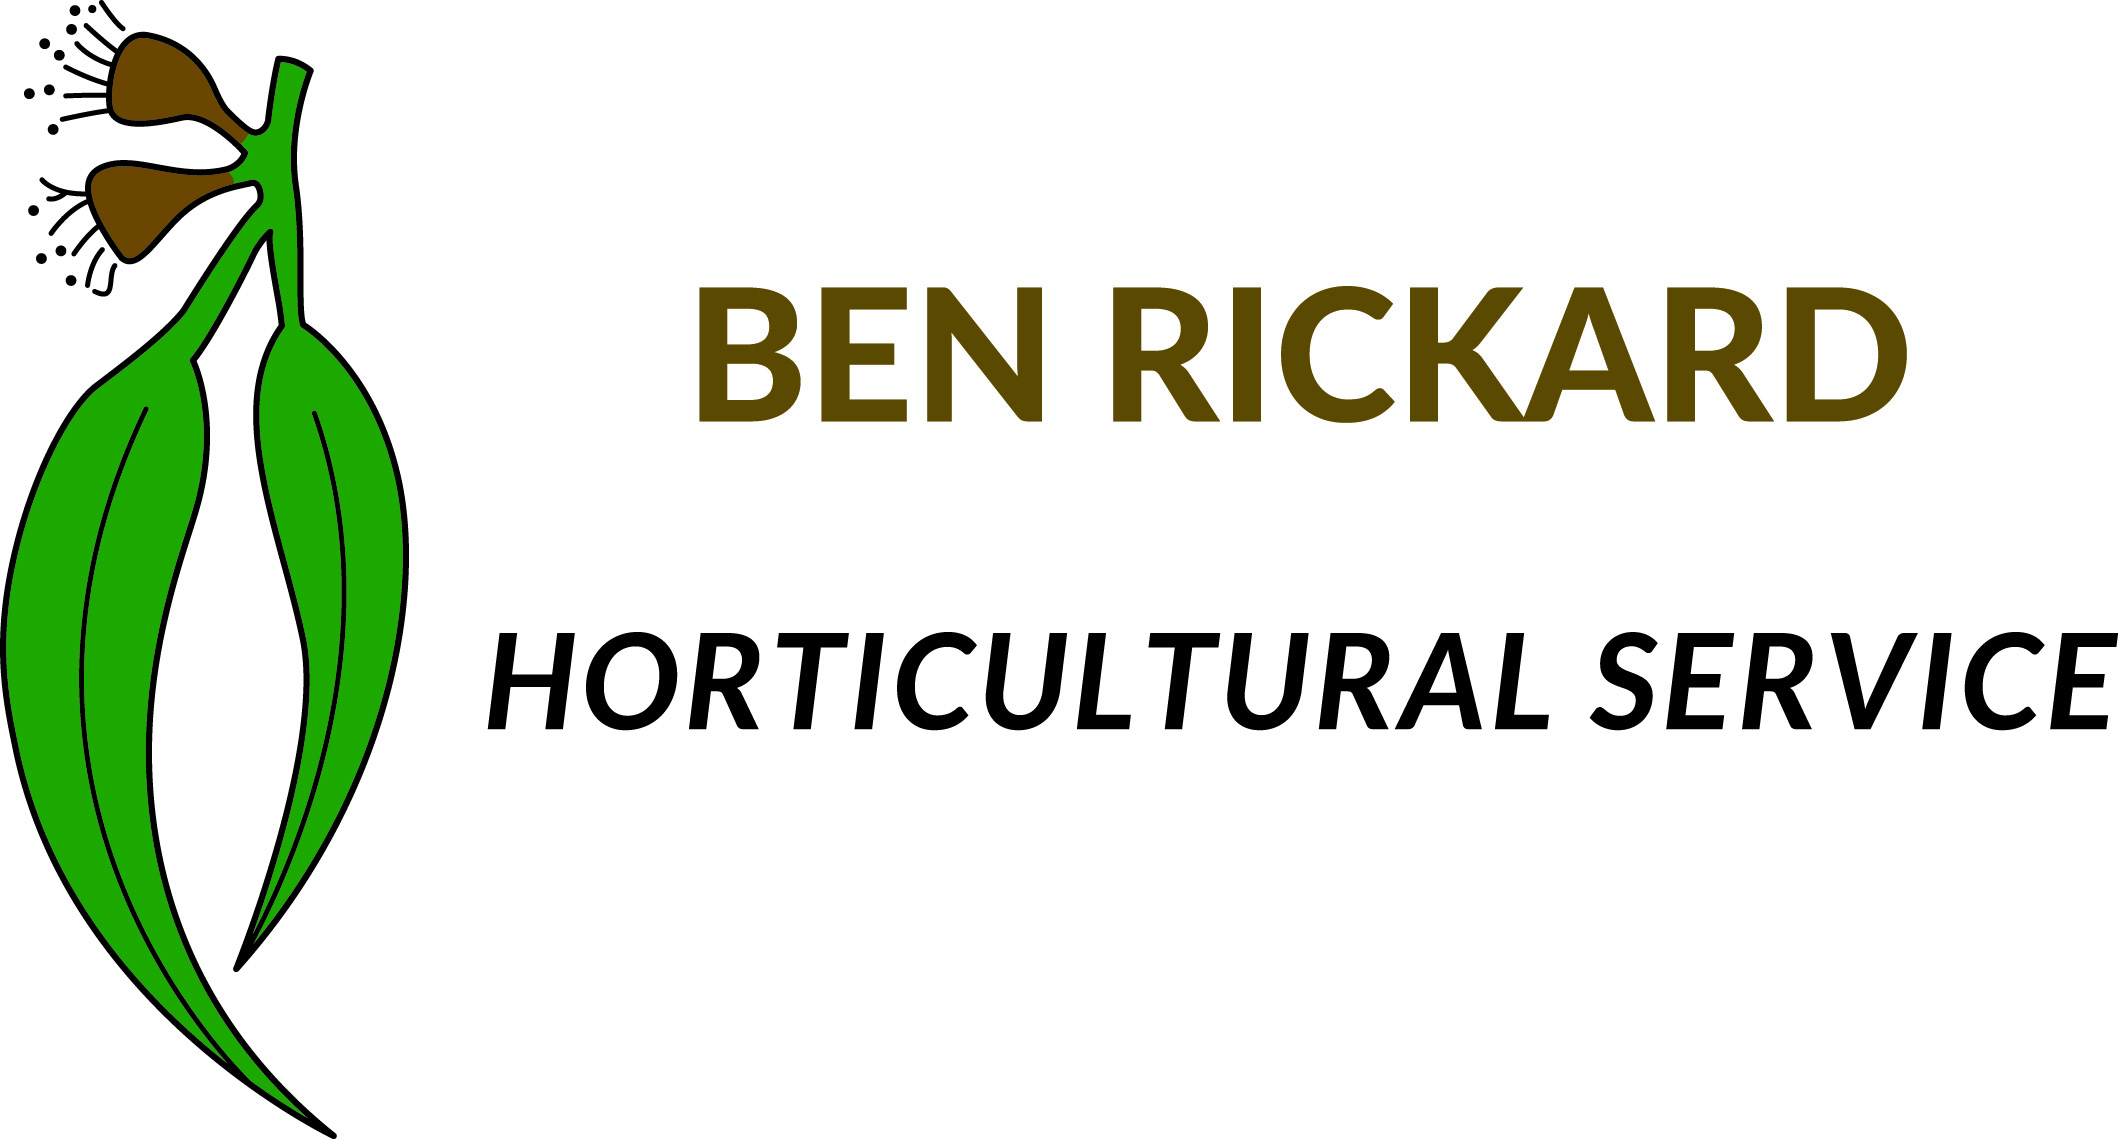 Ben Rickard Horticultural Service